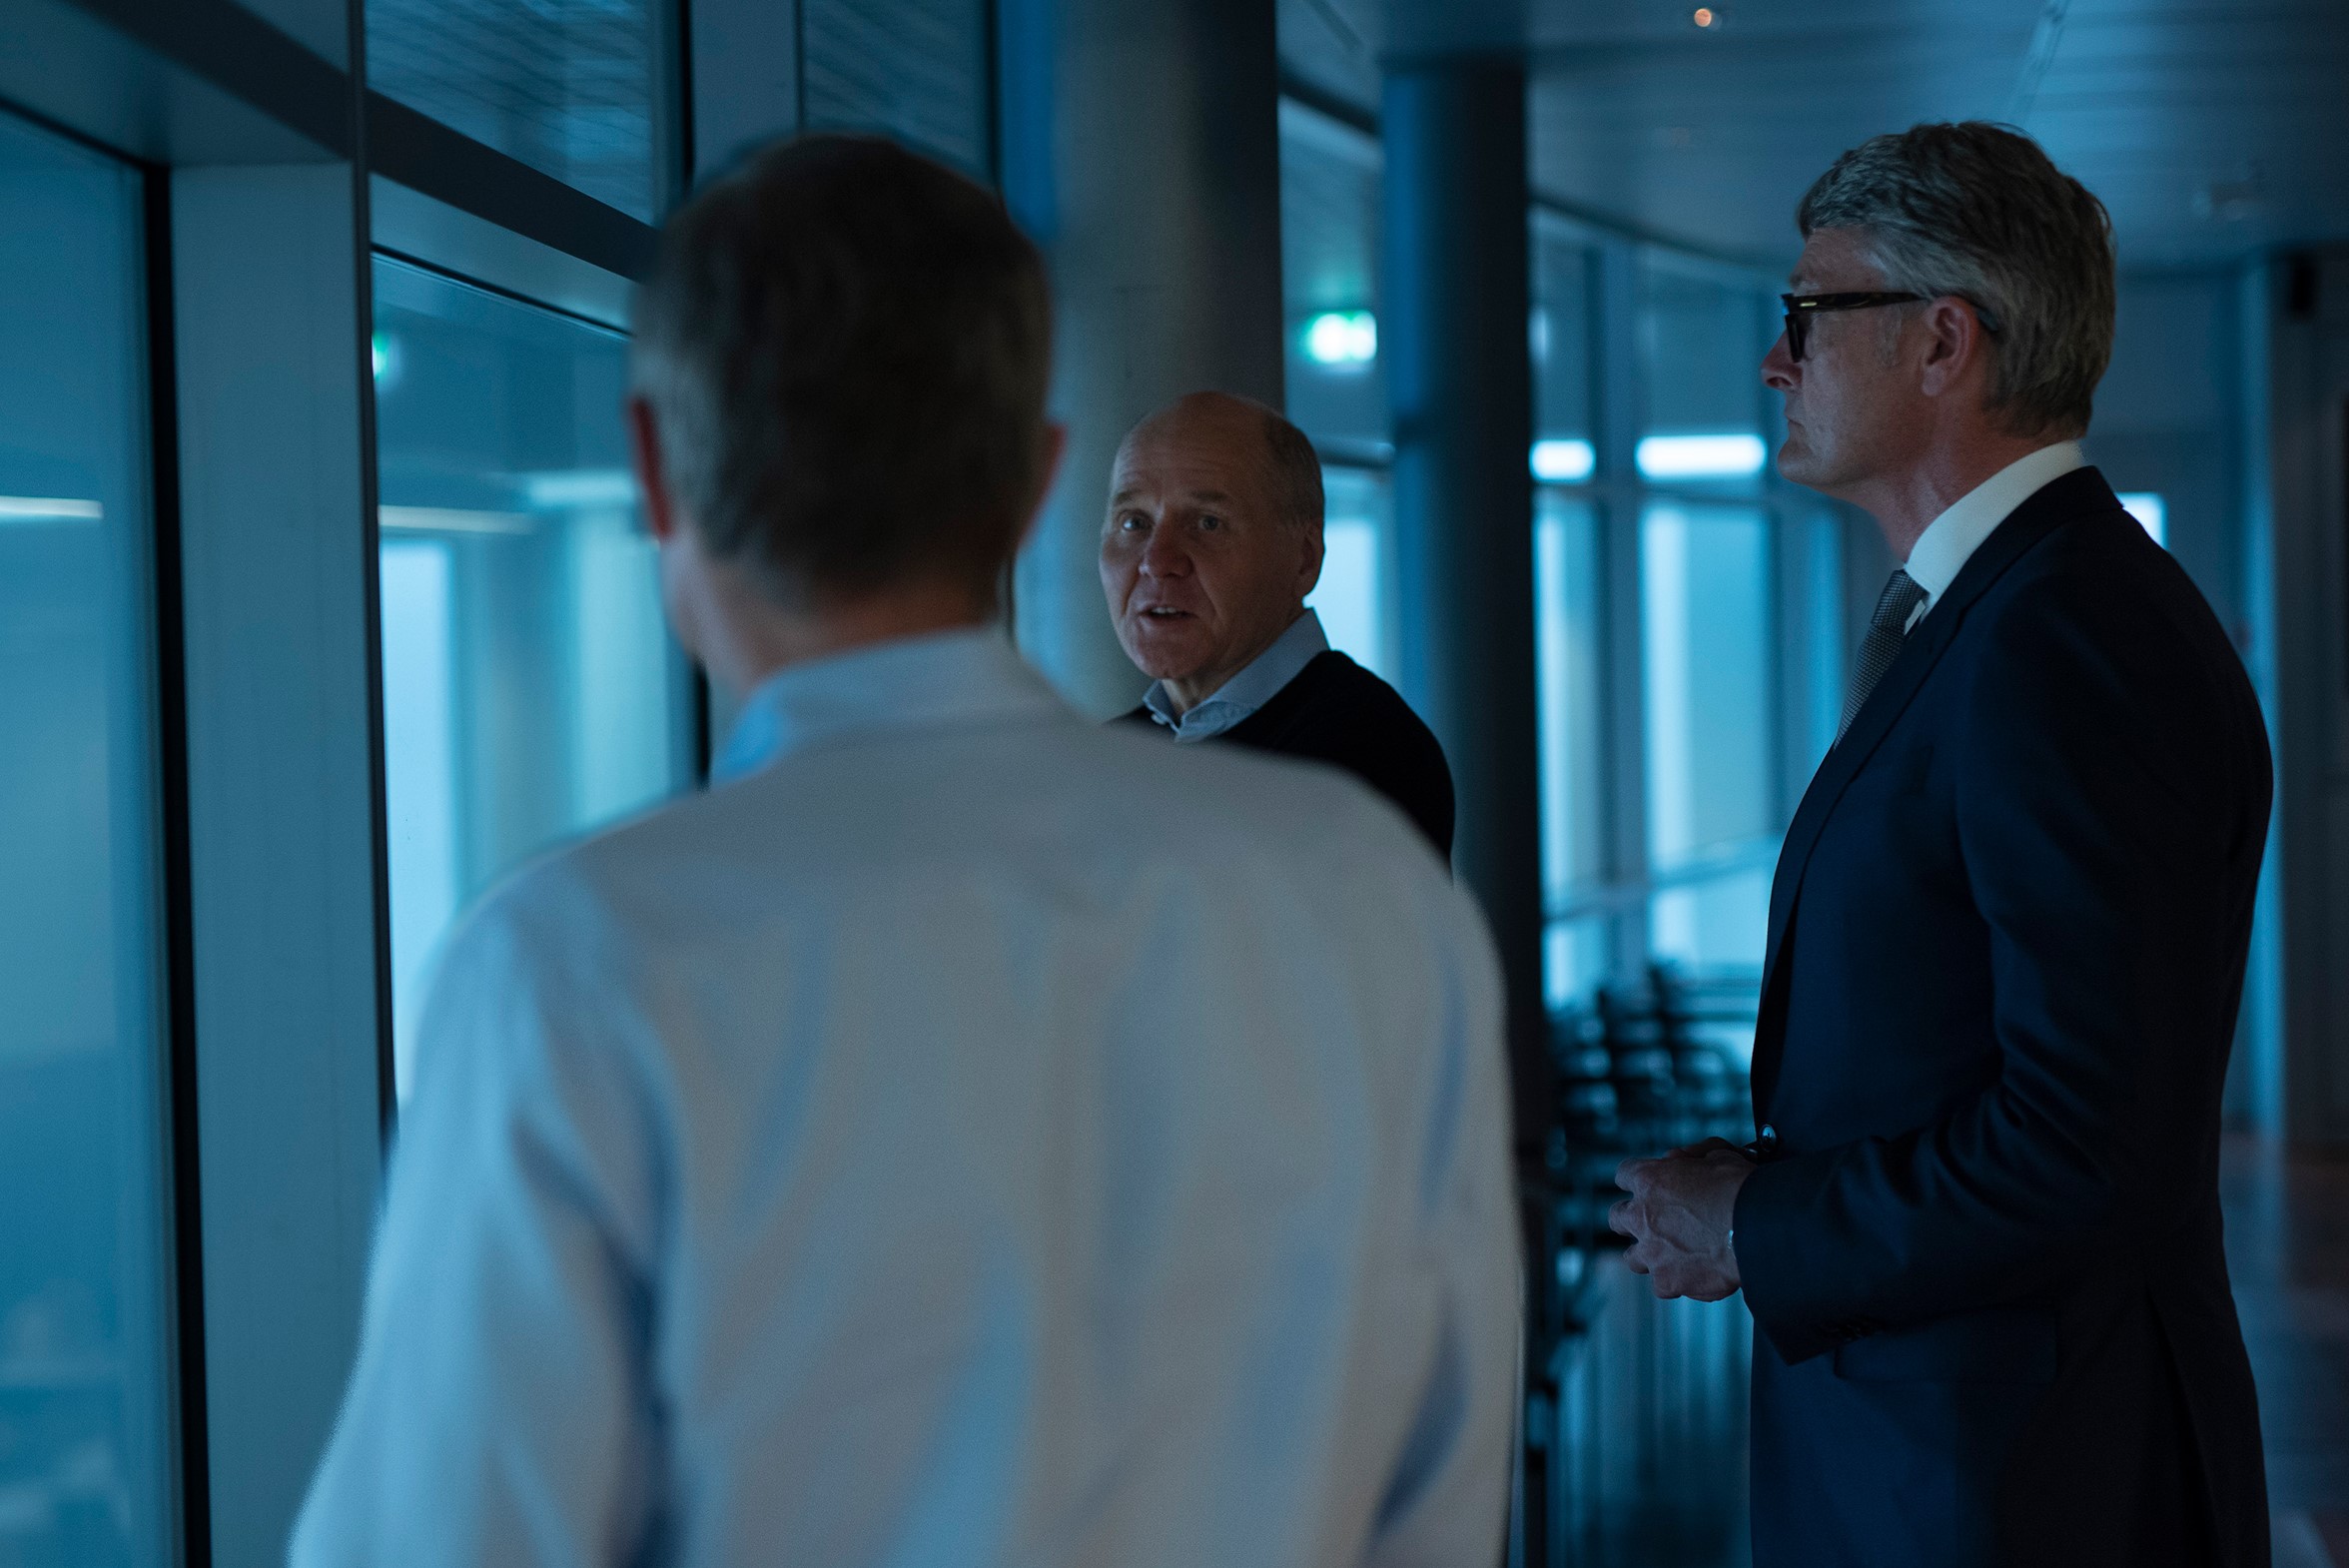 Sigve Brekke talks with Øyvind Eriksen, President and CEO of Aker, and John Markus Lervik CEO of Cognite.